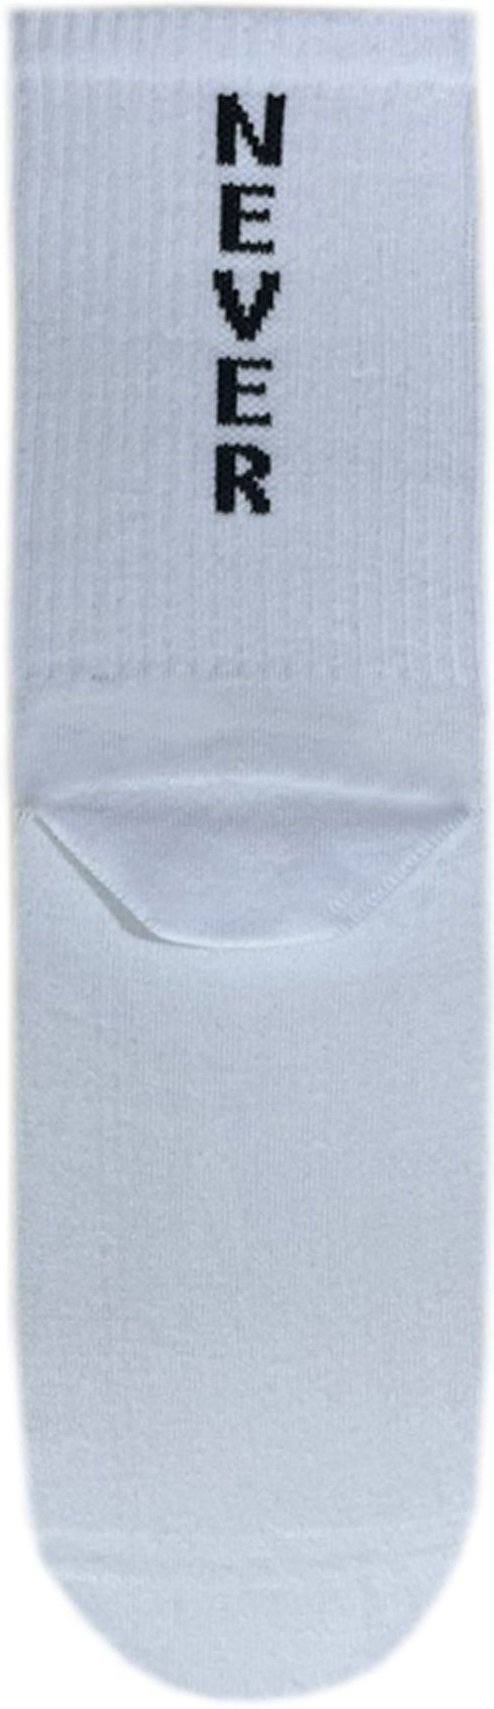 Носки мужские Premier Socks 40-41 1 пара белые с принтом (4820163317915) фото 2